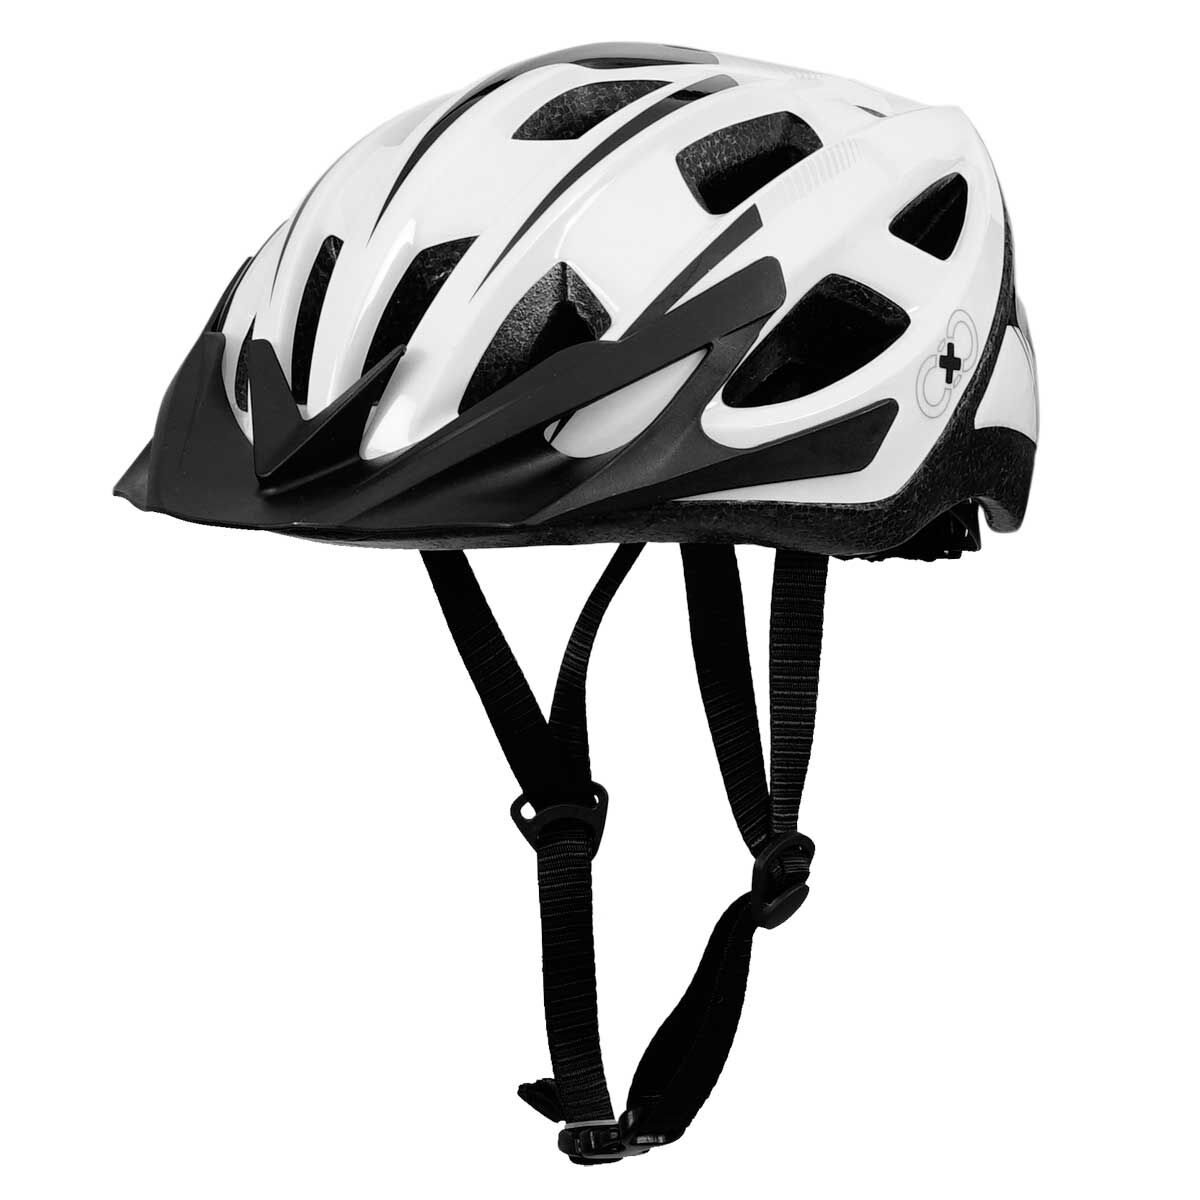 white helmet for bike